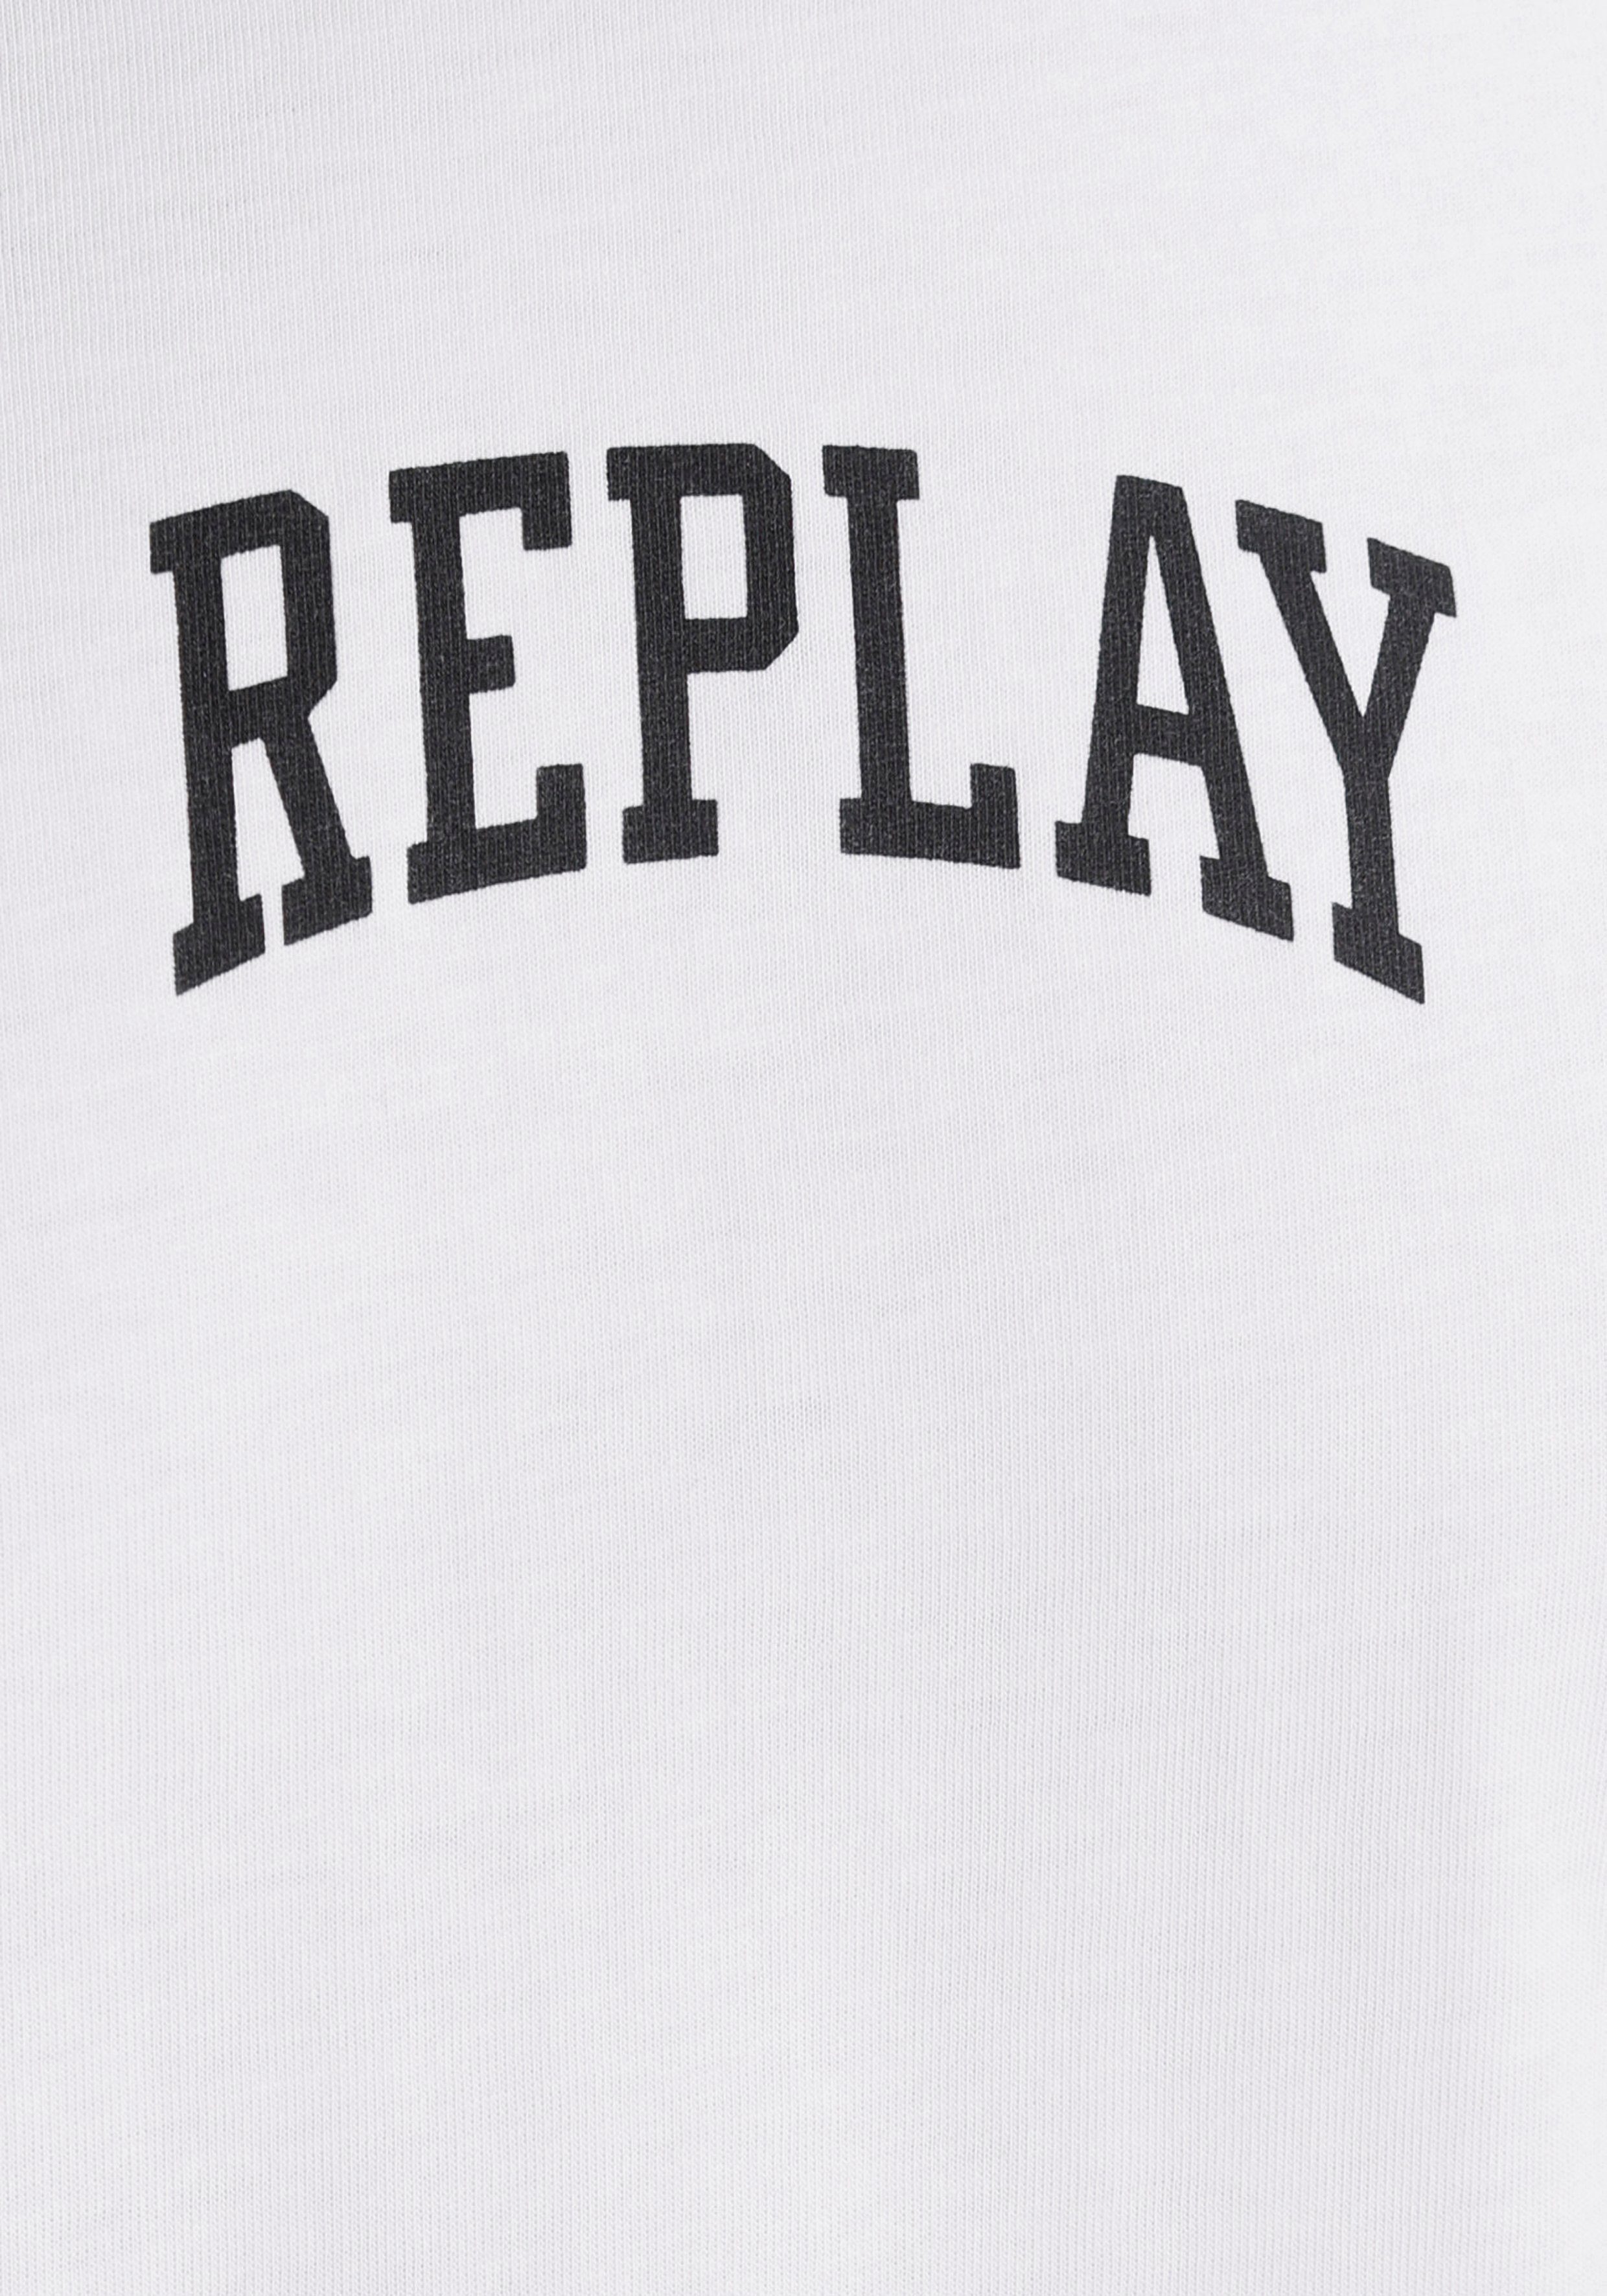 weiß Markenprint T-Shirt Replay mit